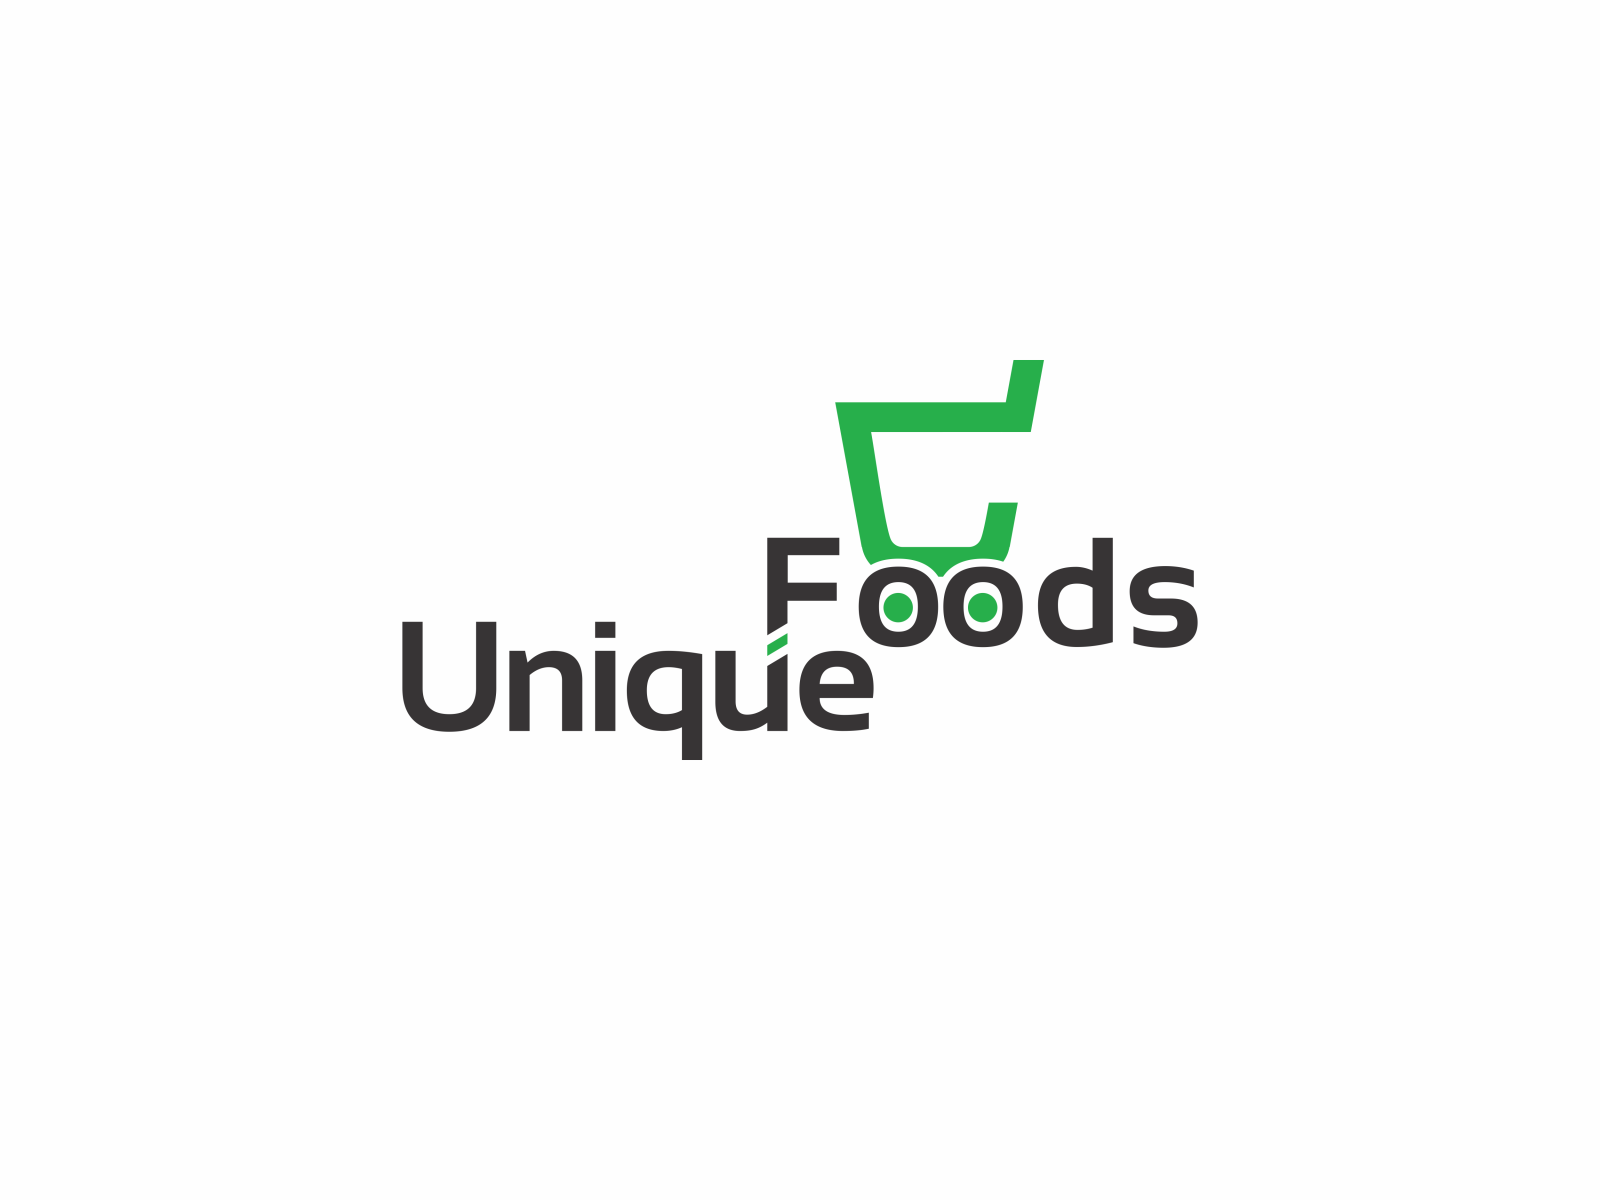 Unique foods logo by Piyumi Ekanayake on Dribbble